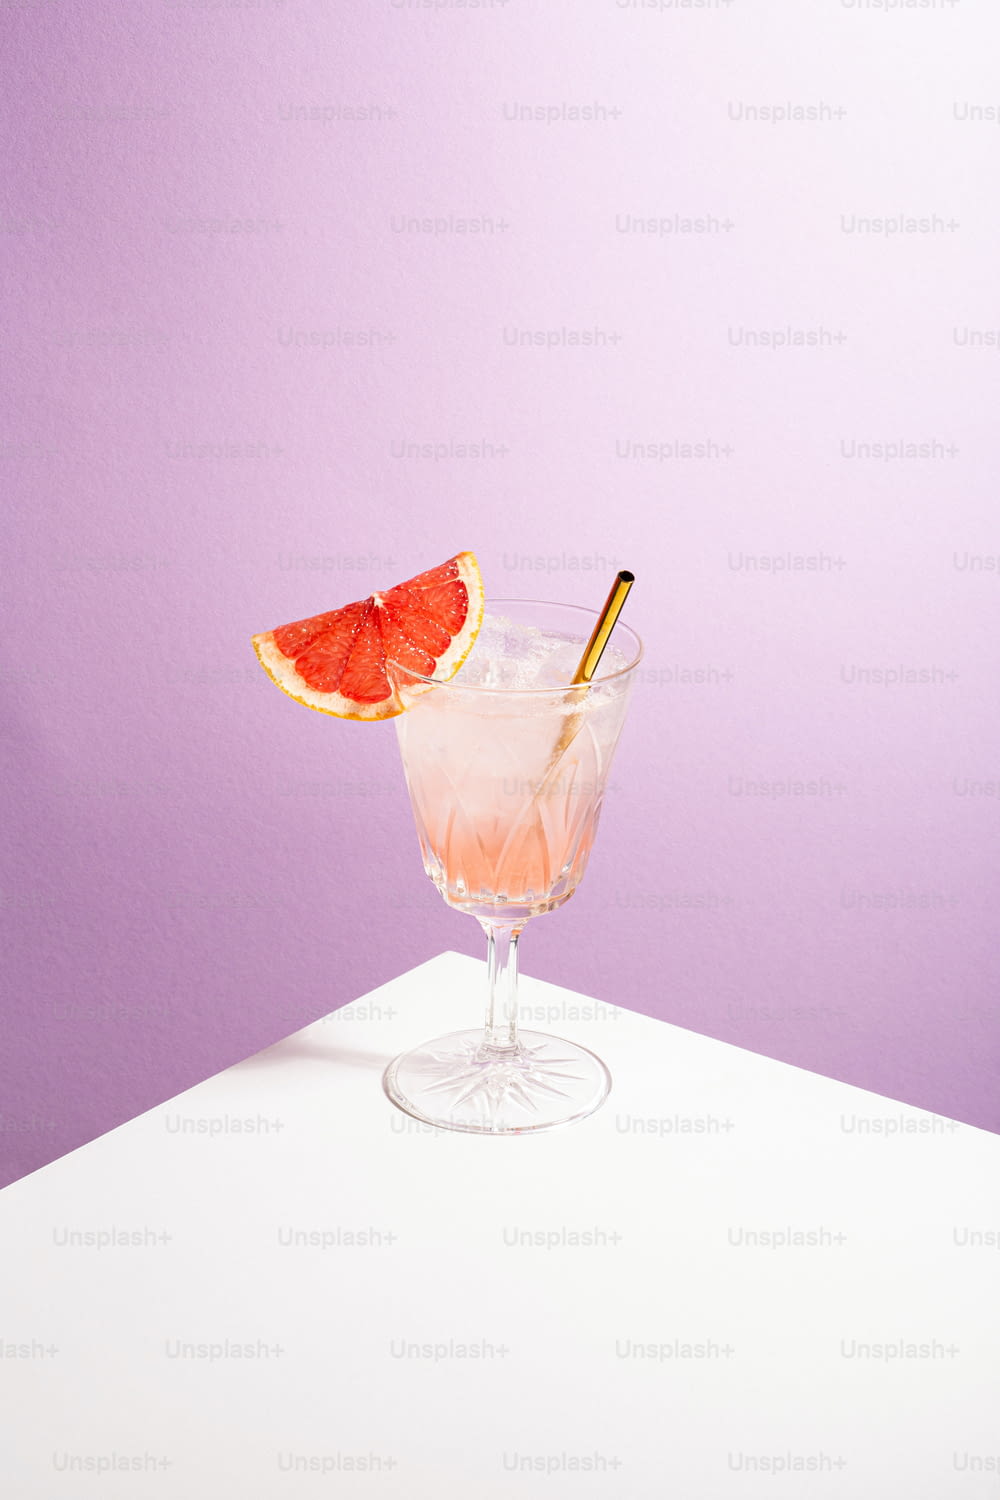 ein Grapefruit-Cocktail garniert mit einer Scheibe Grapefruit